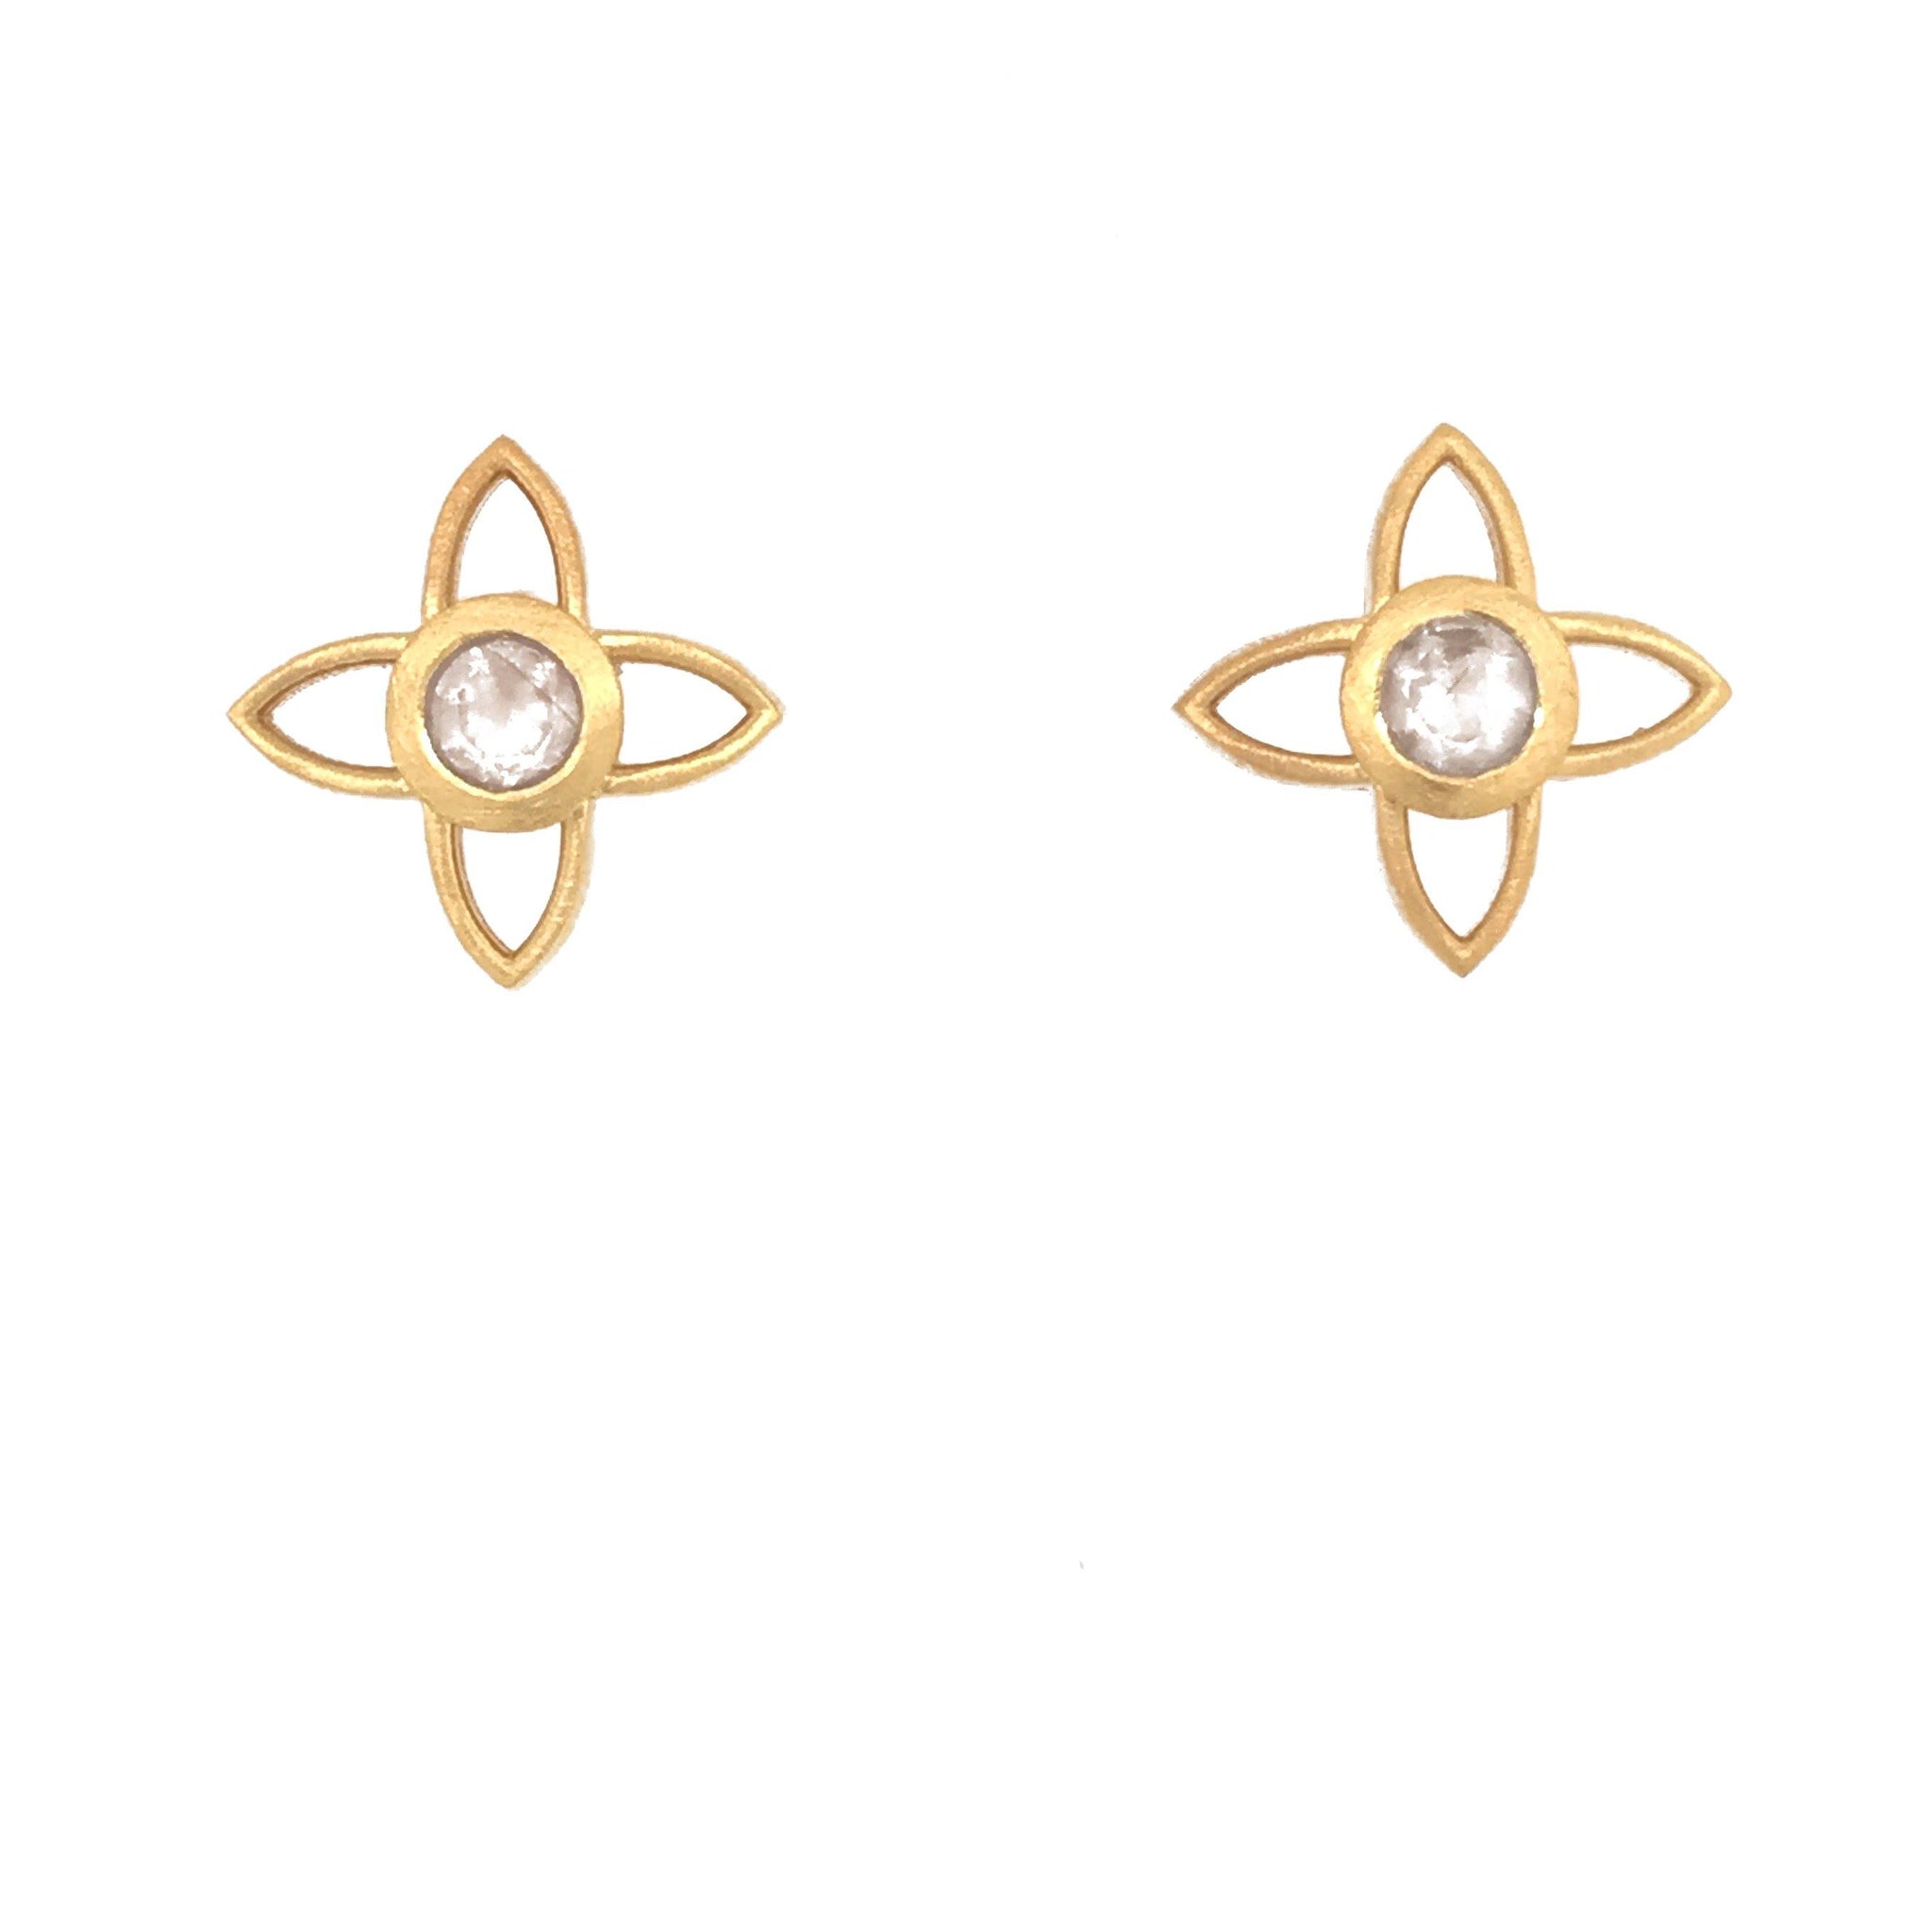 JOY FLOWER EARRINGS 15MM RAINBOW MOONSTONE POST 24K GOLD VERMEIL - Joyla Jewelry